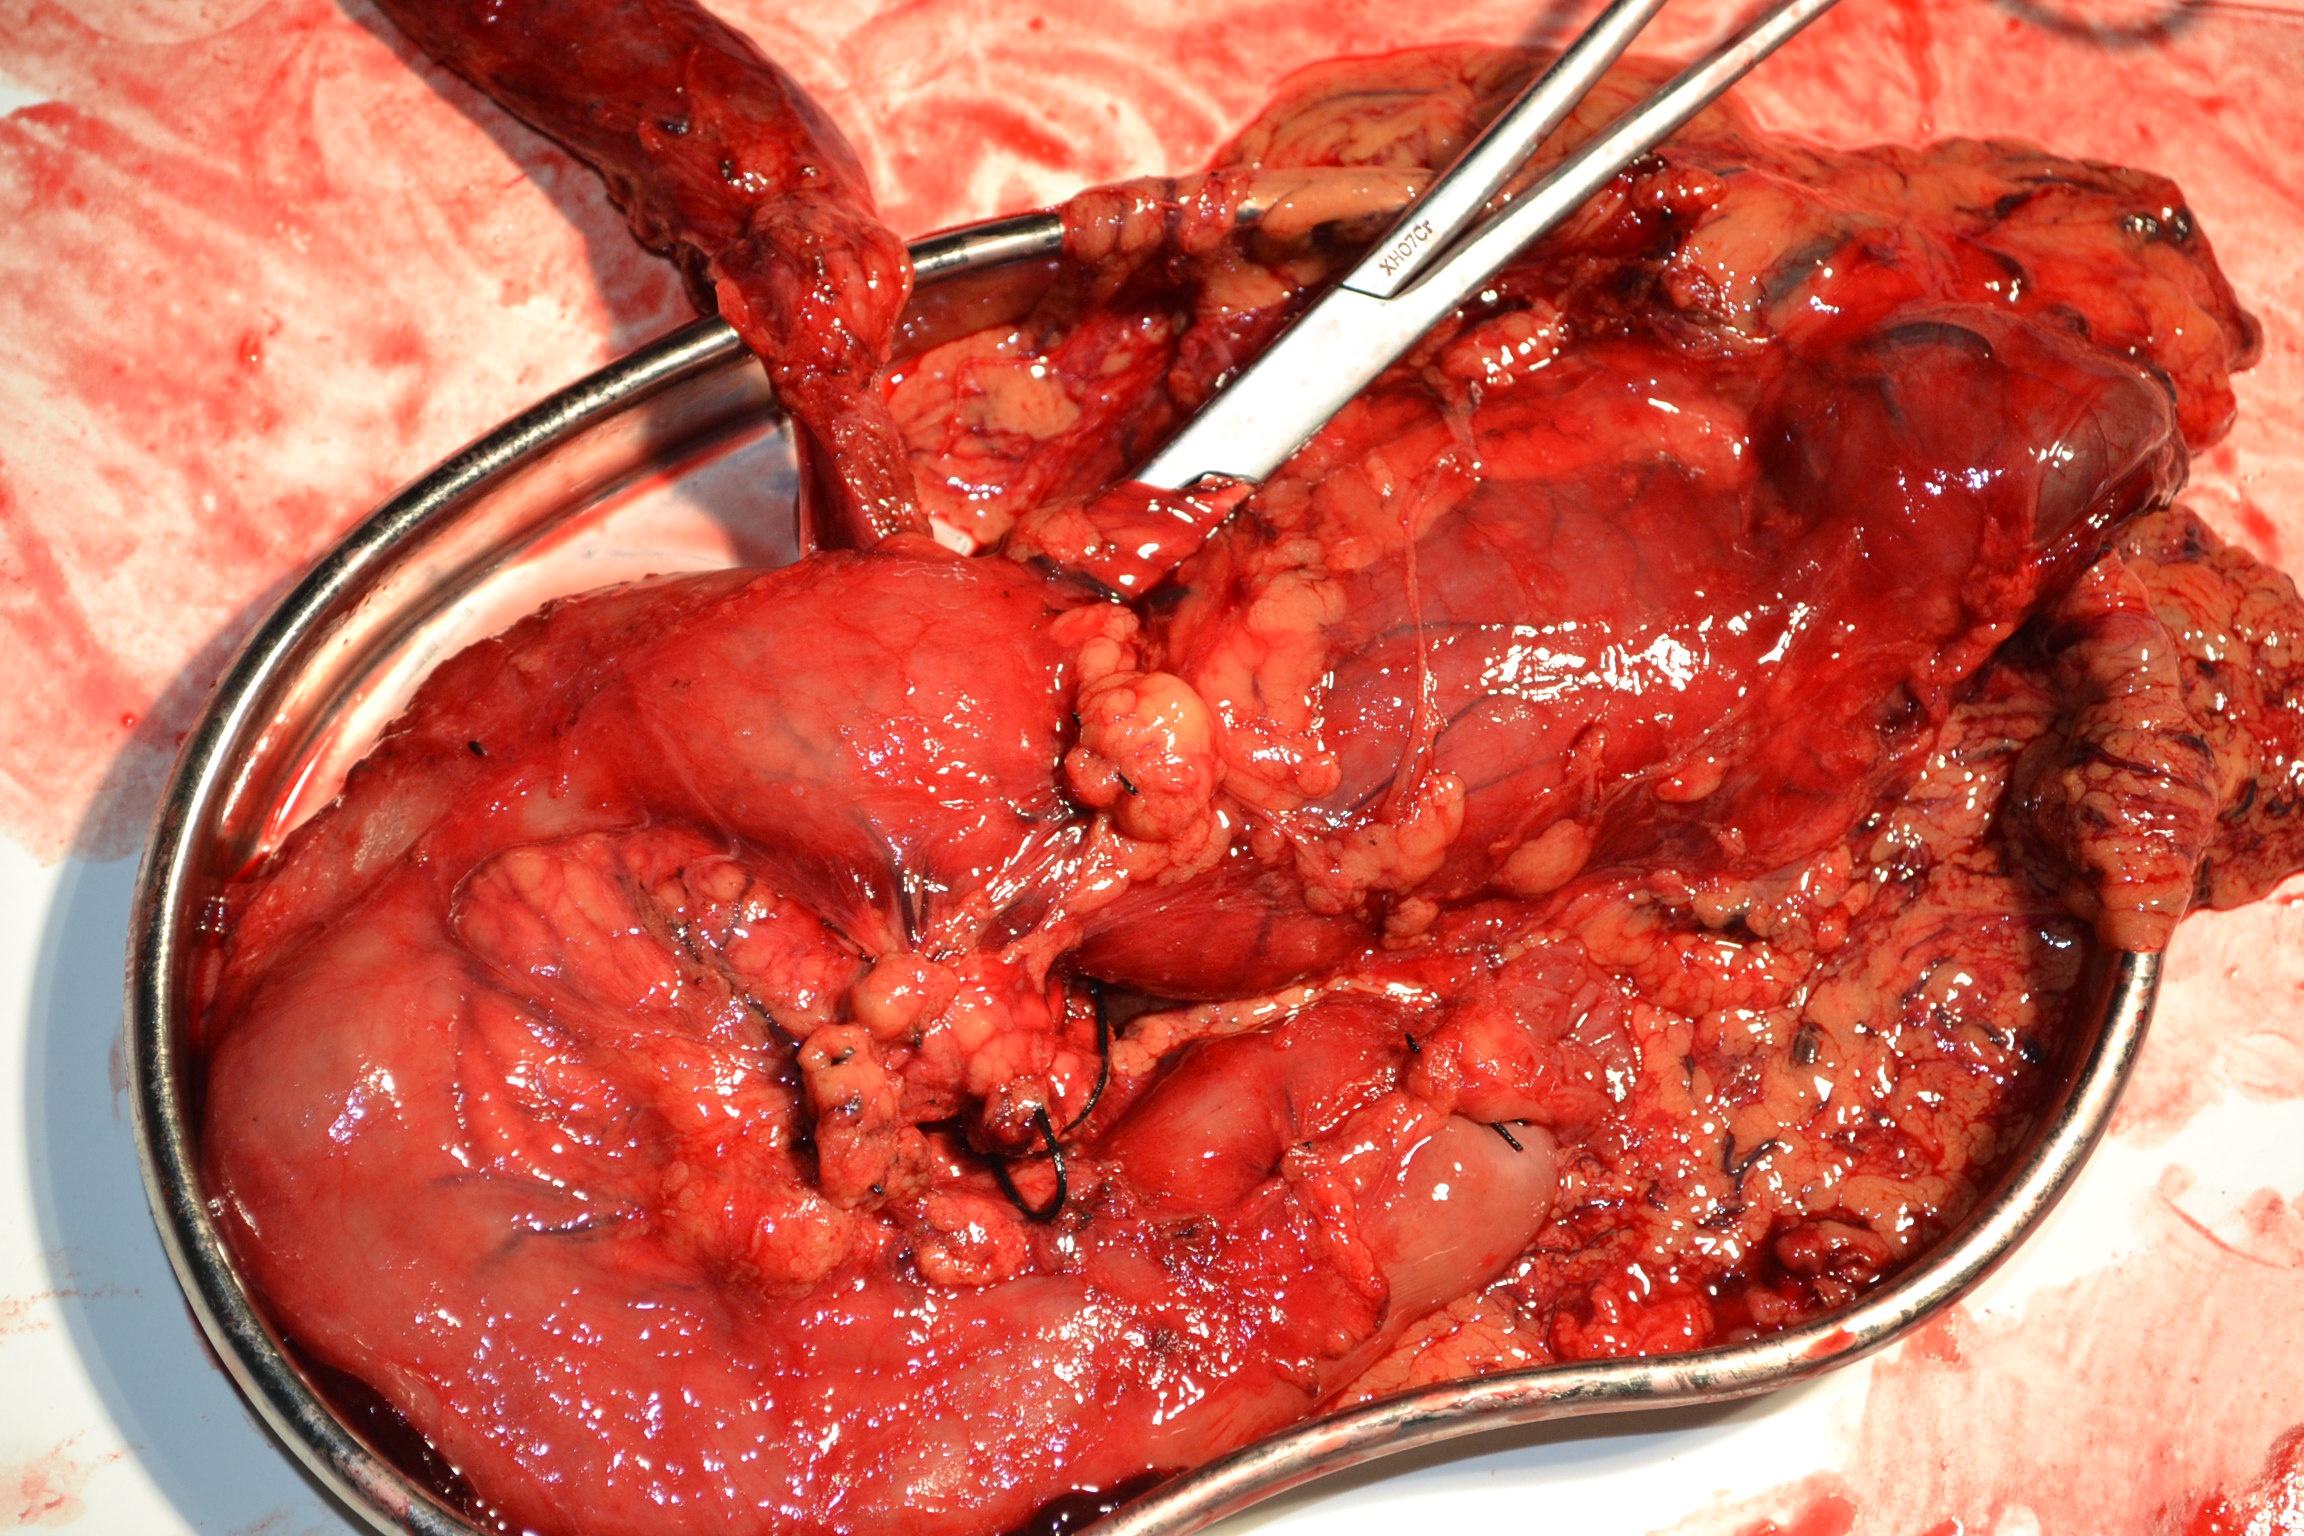 定义 壶腹癌是位於十二指肠第二部份内侧肠壁,因解剖位置之相关性